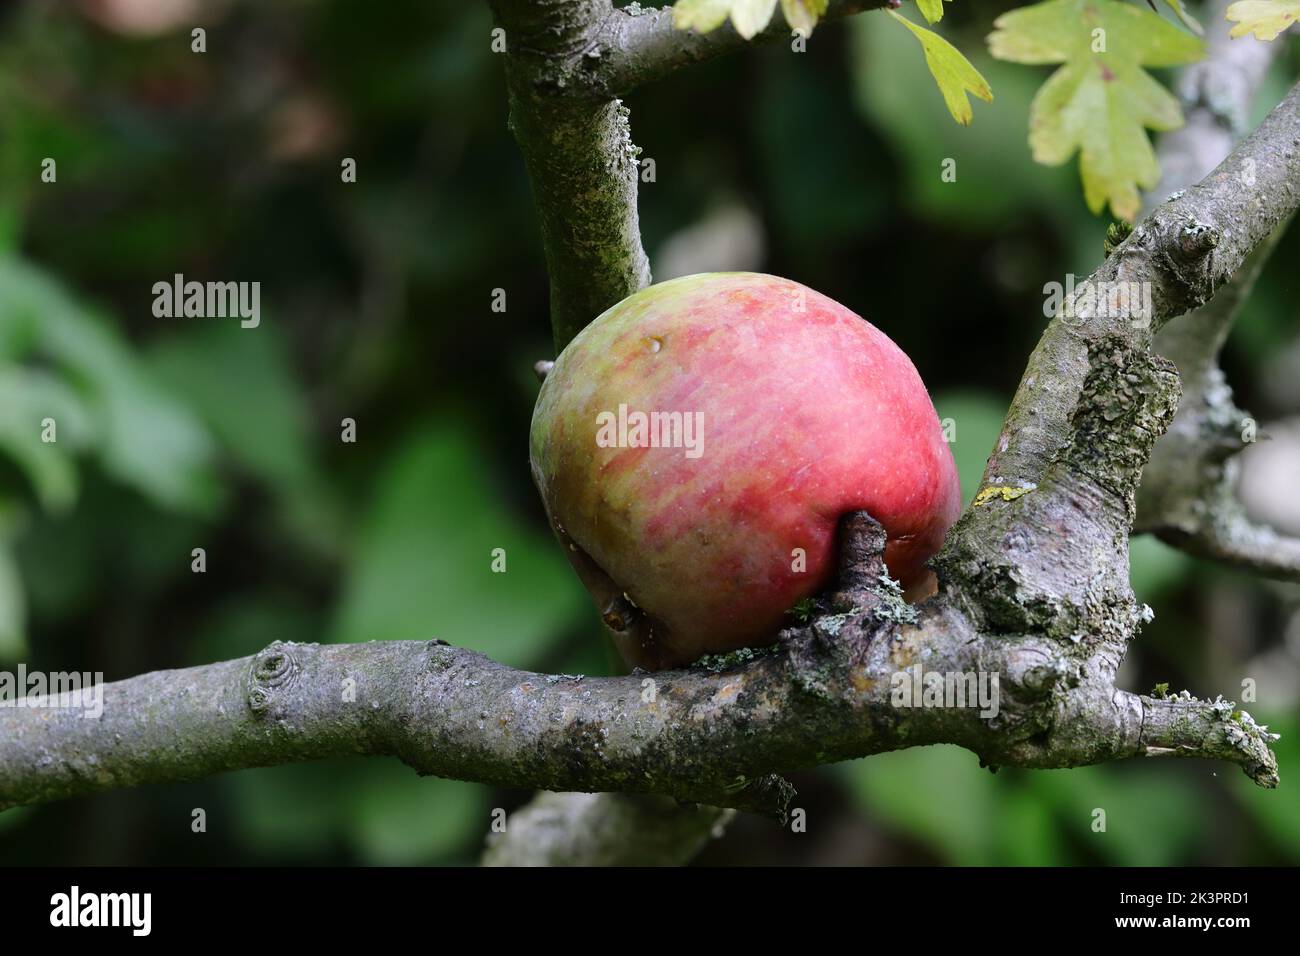 une pomme tombée de son arbre est coincée sur une branche, vue latérale Banque D'Images